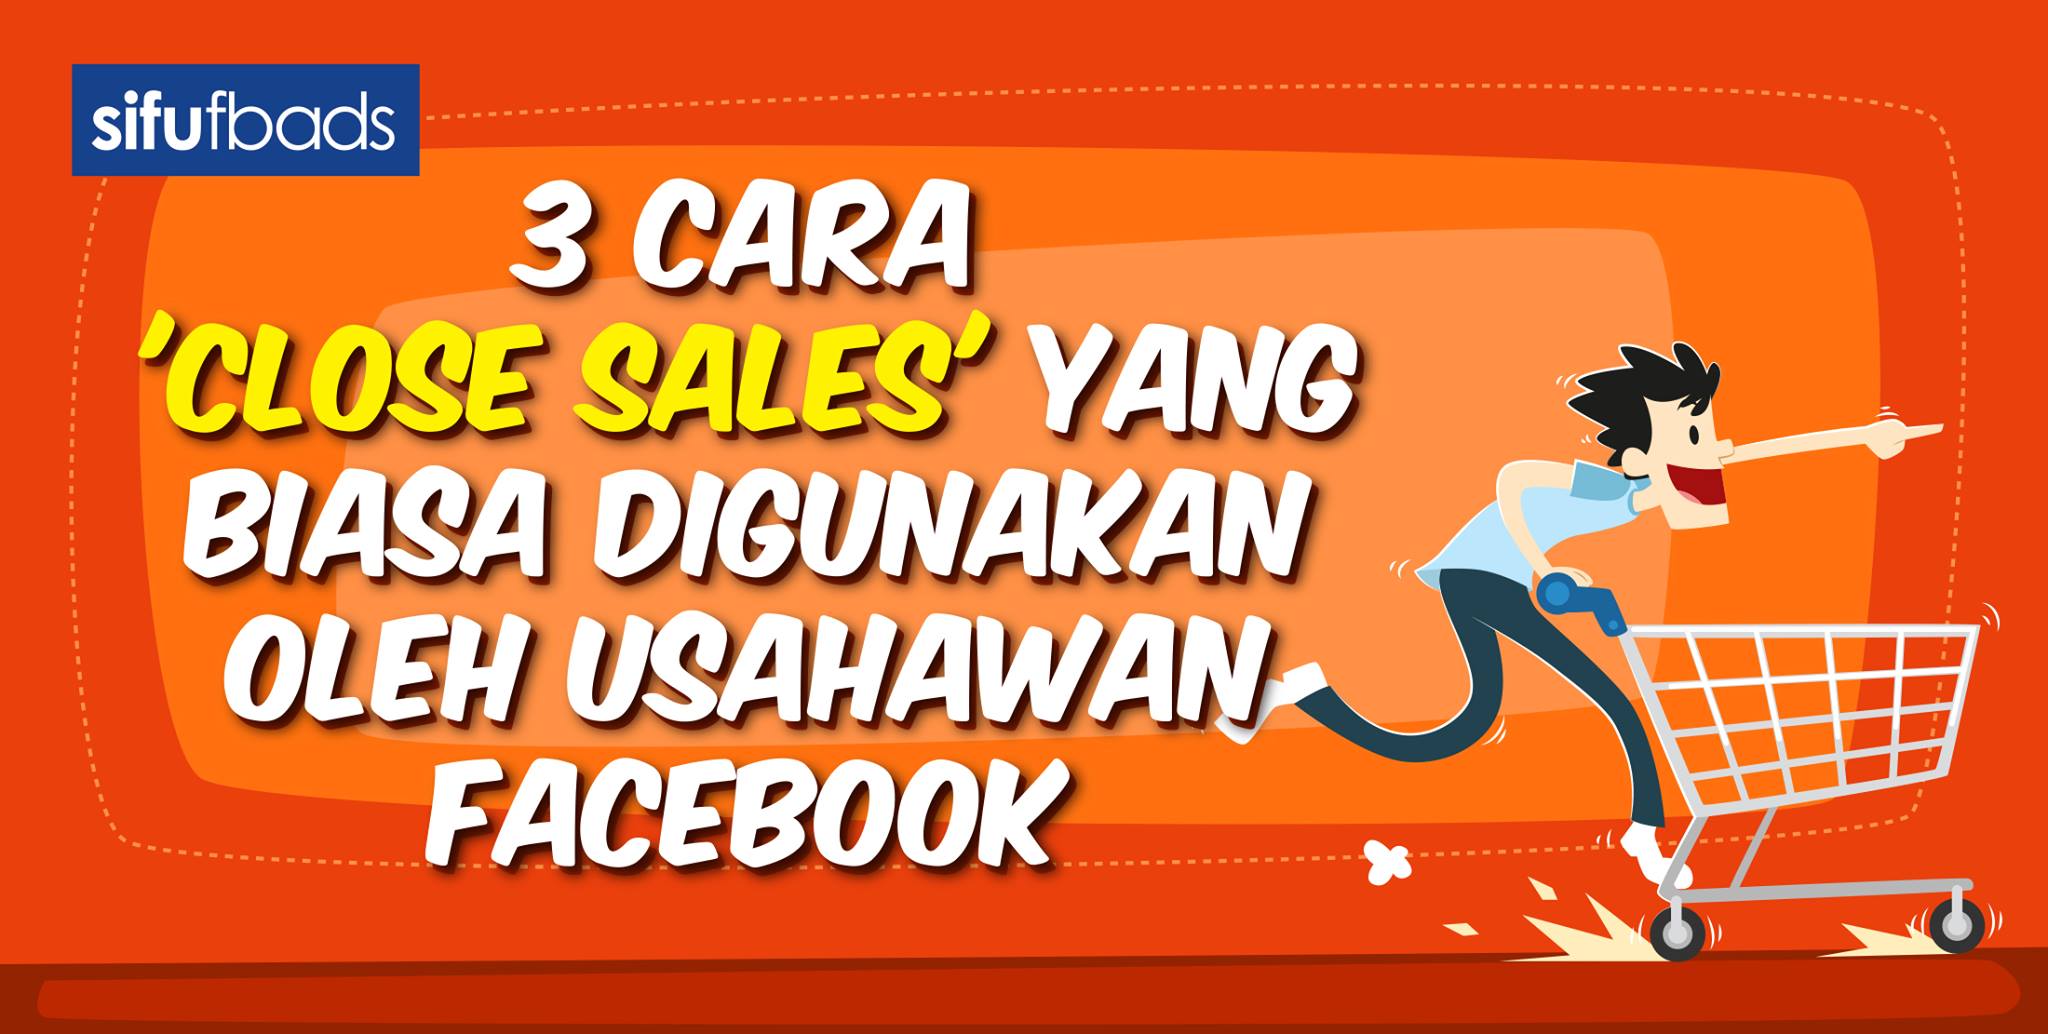 3 Cara ‘Close Sales’ Yang Biasa Digunakan Oleh Usahawan Facebook